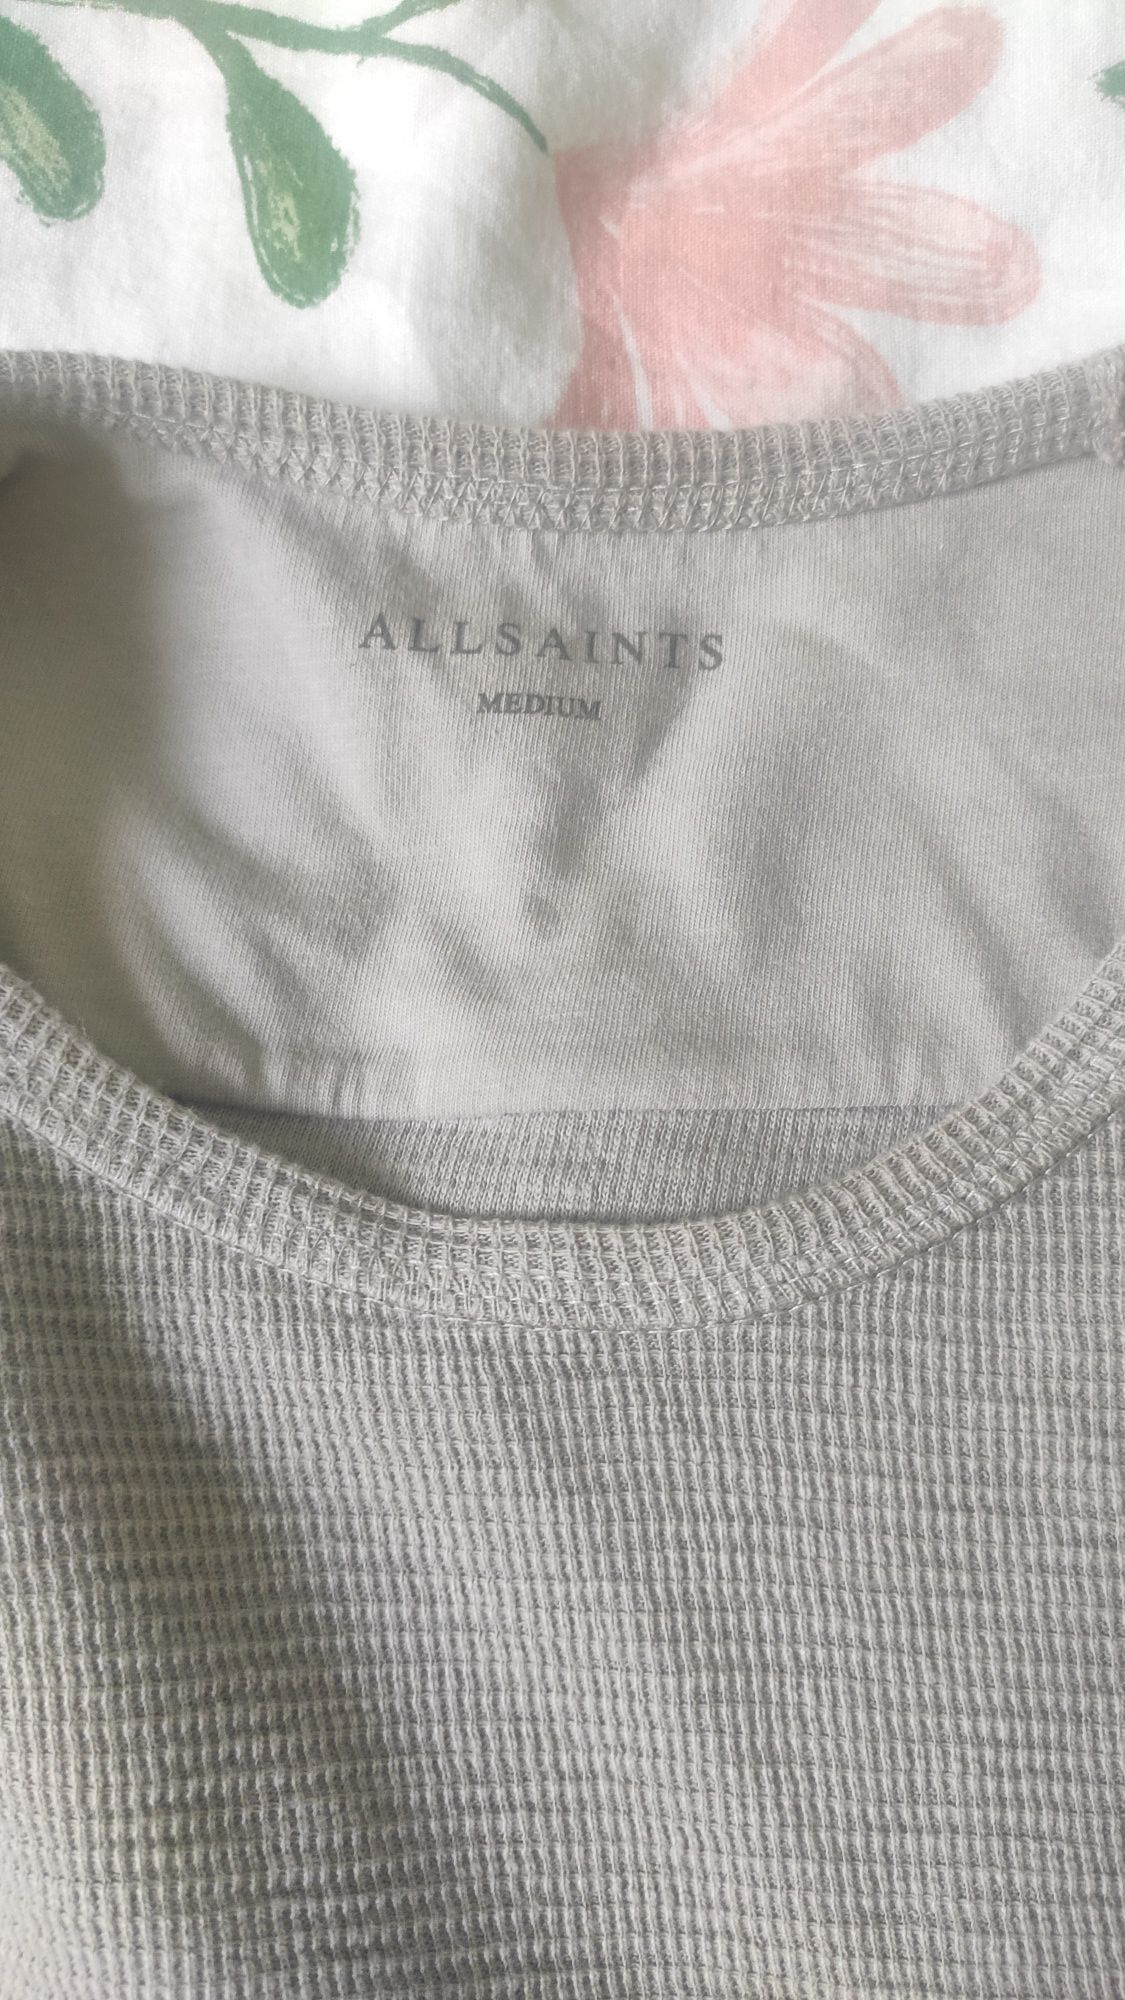 Bluza męska Allsaints rozmiar M/L.